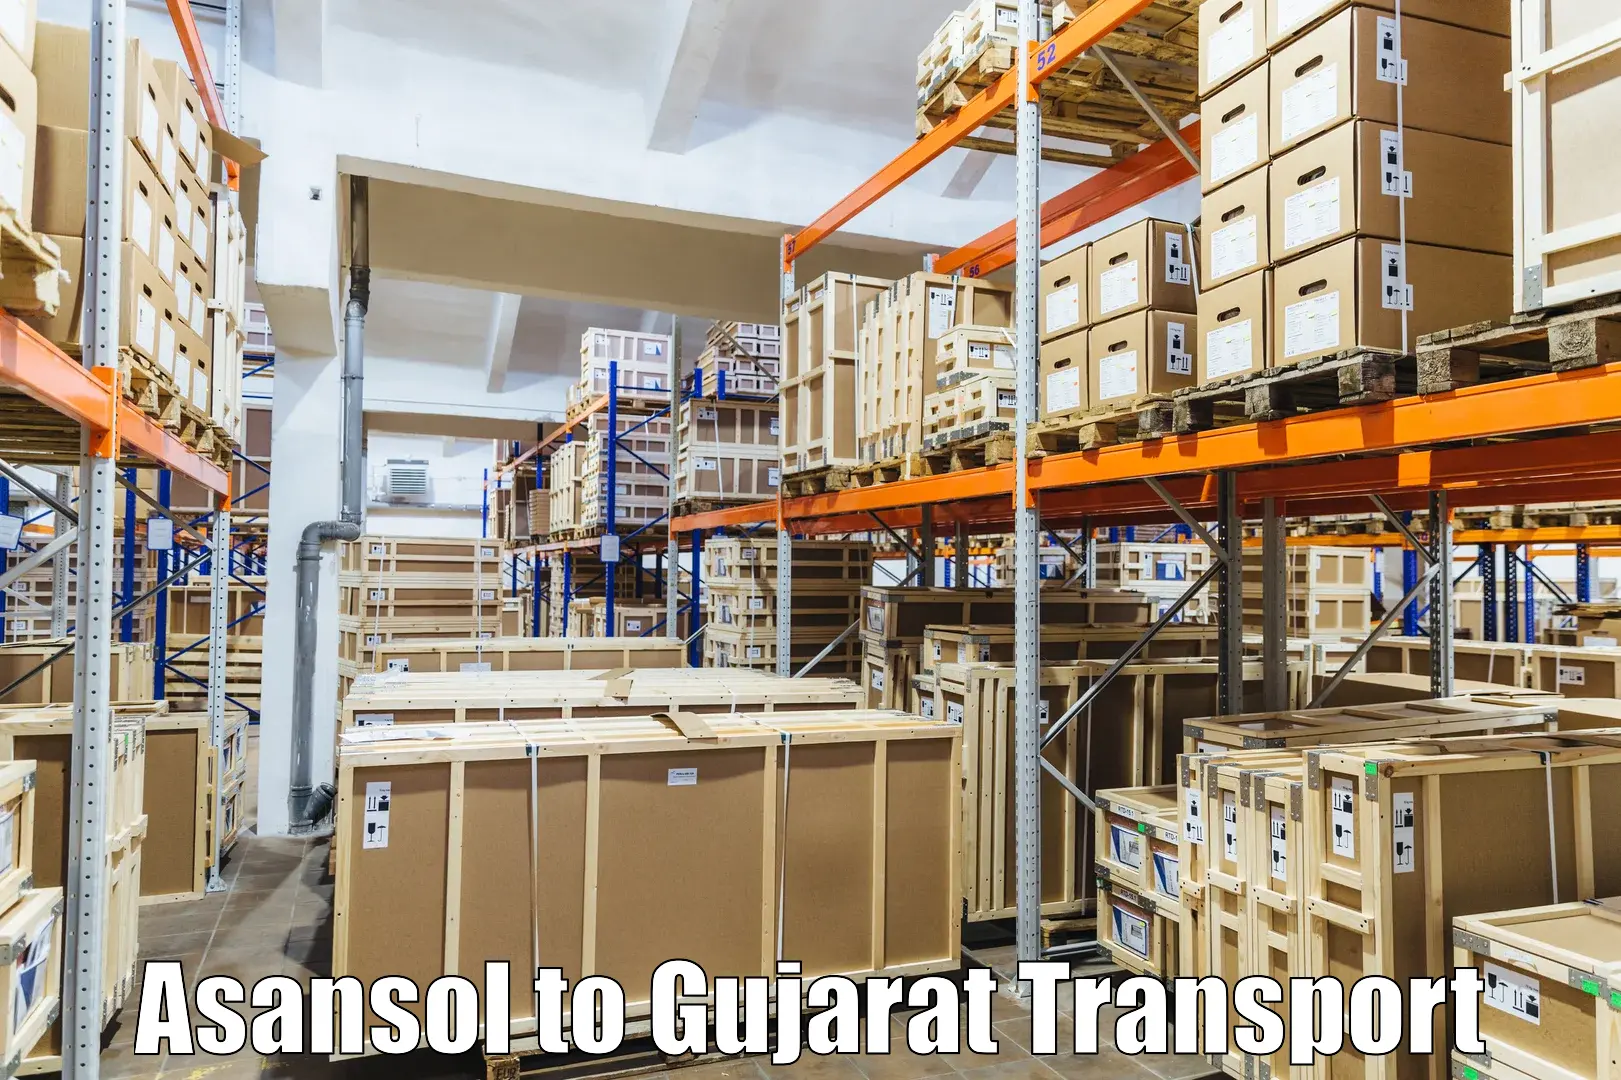 Furniture transport service Asansol to Dhasa